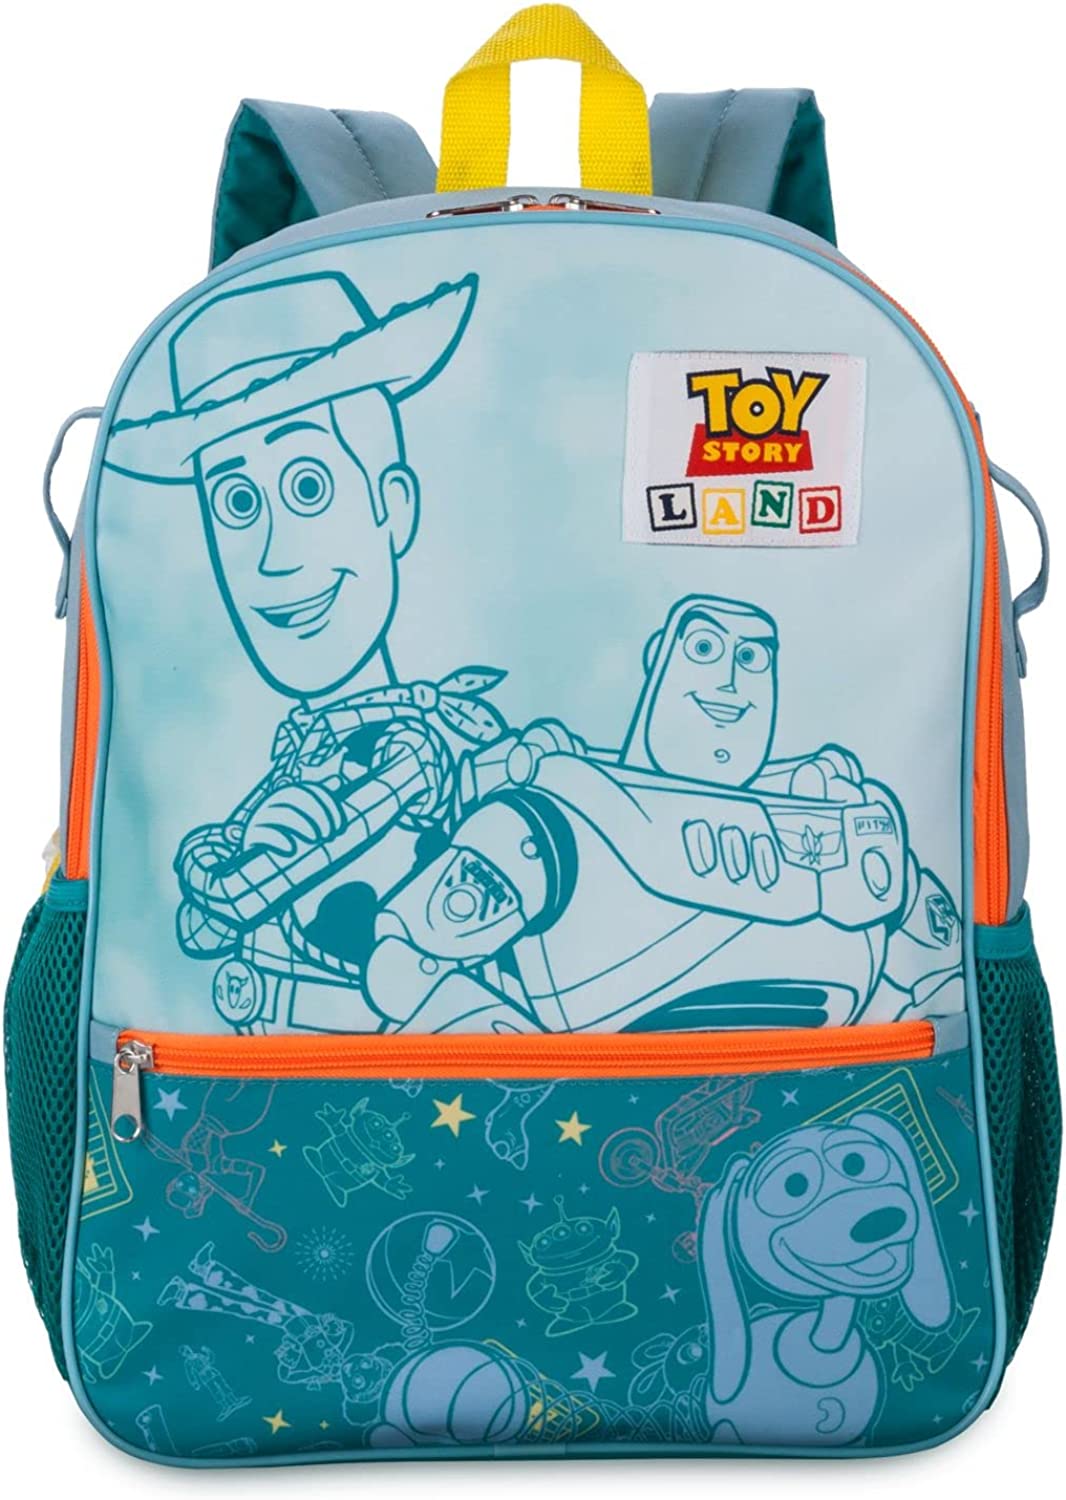 Disney Pixar Toy Story Backpack